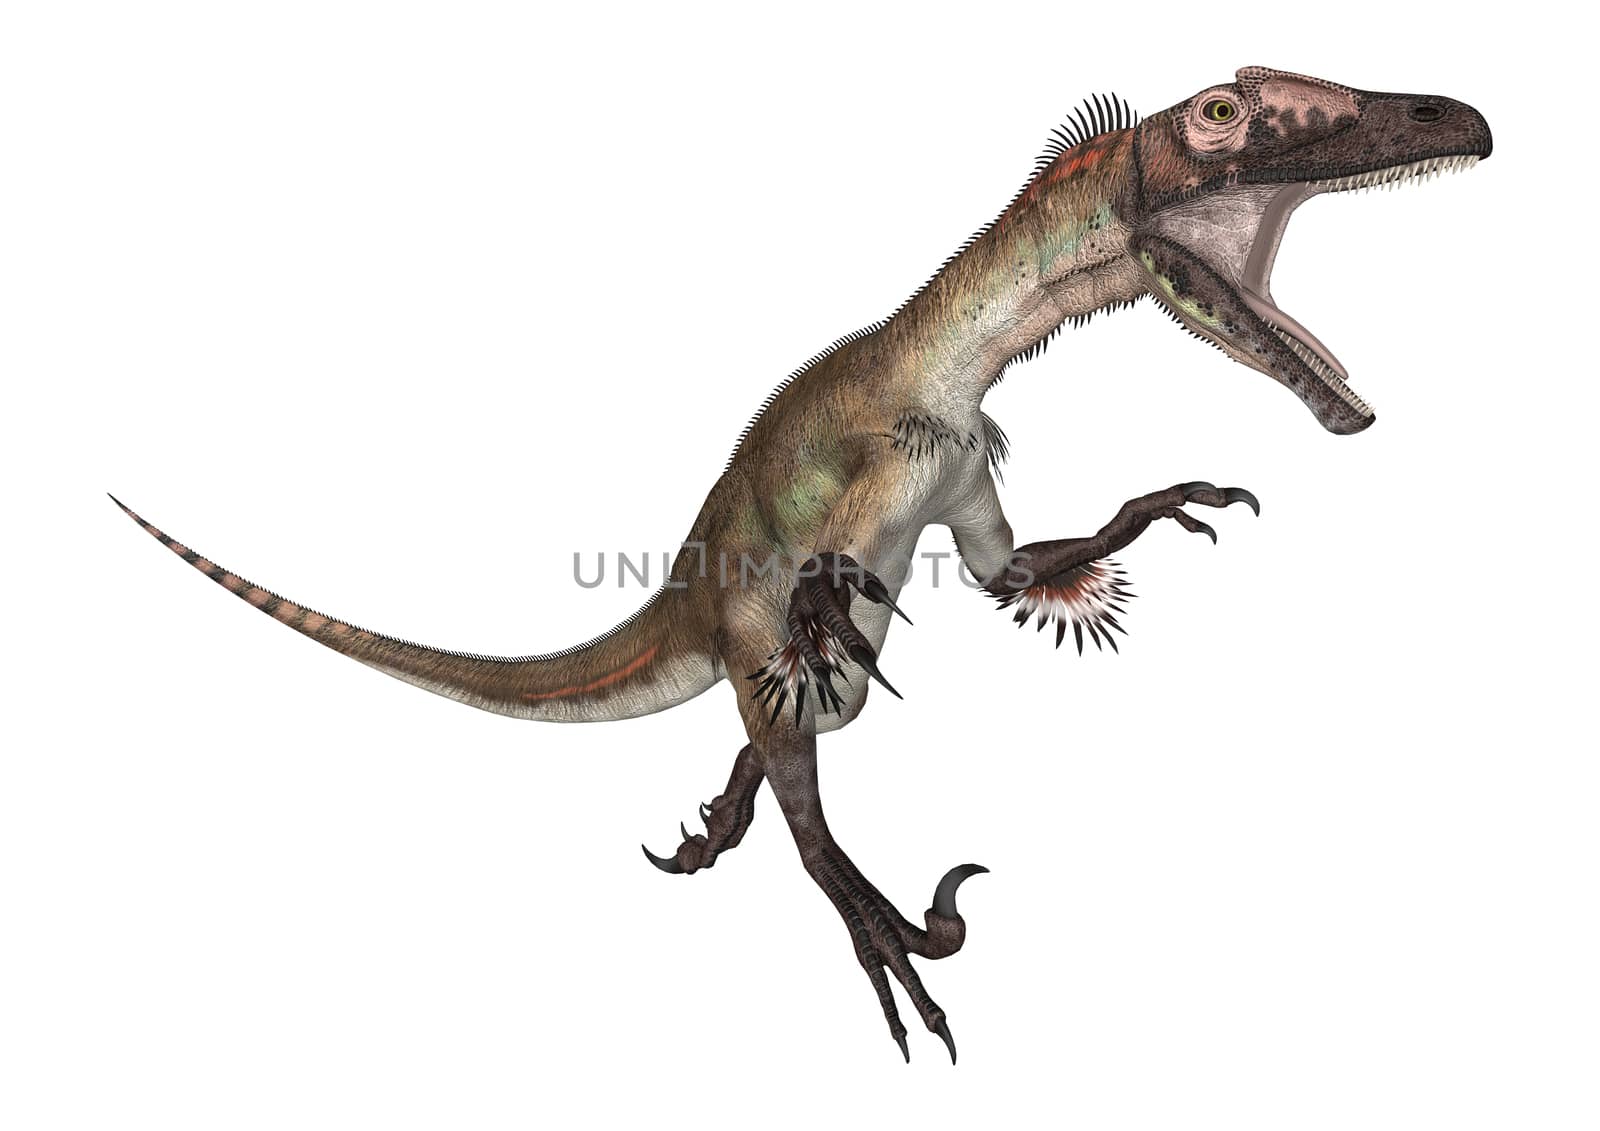 3D digital render of a dinosaur utahraptor running isolated on white background